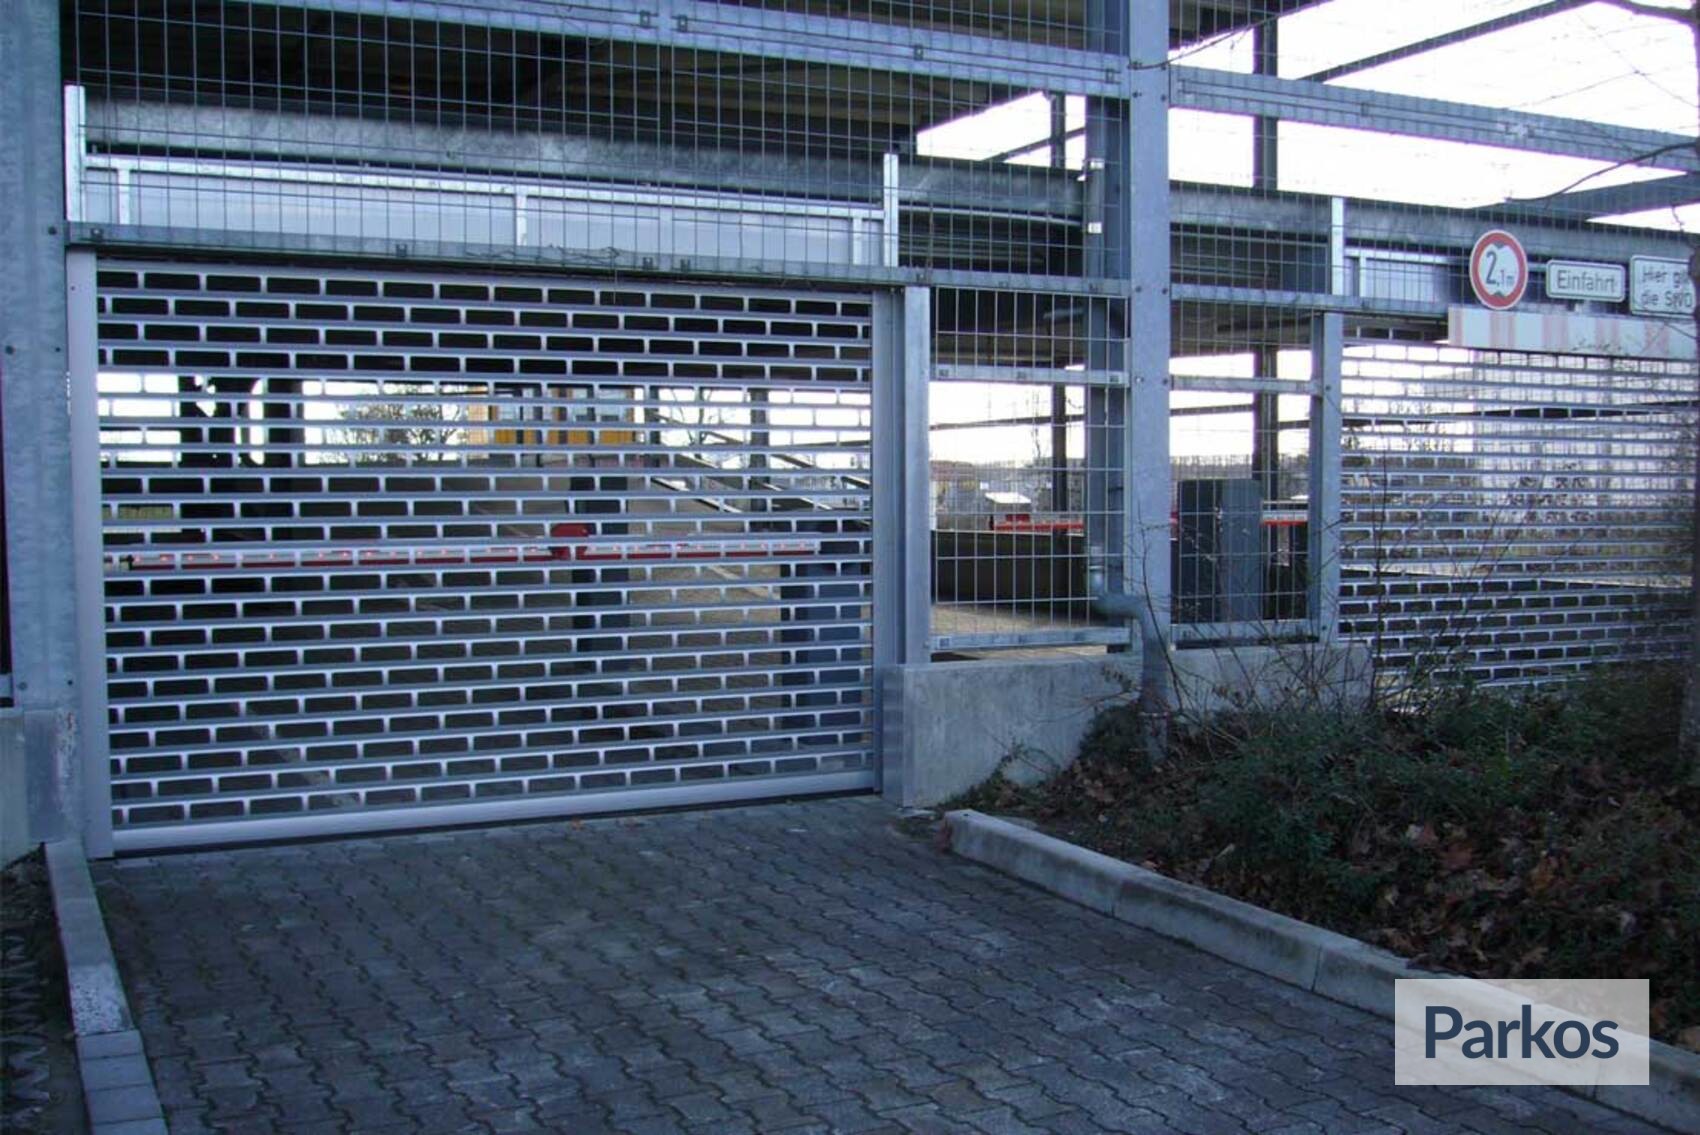 drive&park Frankfurt Indoor Parking - Parking Aéroport Francfort - picture 1